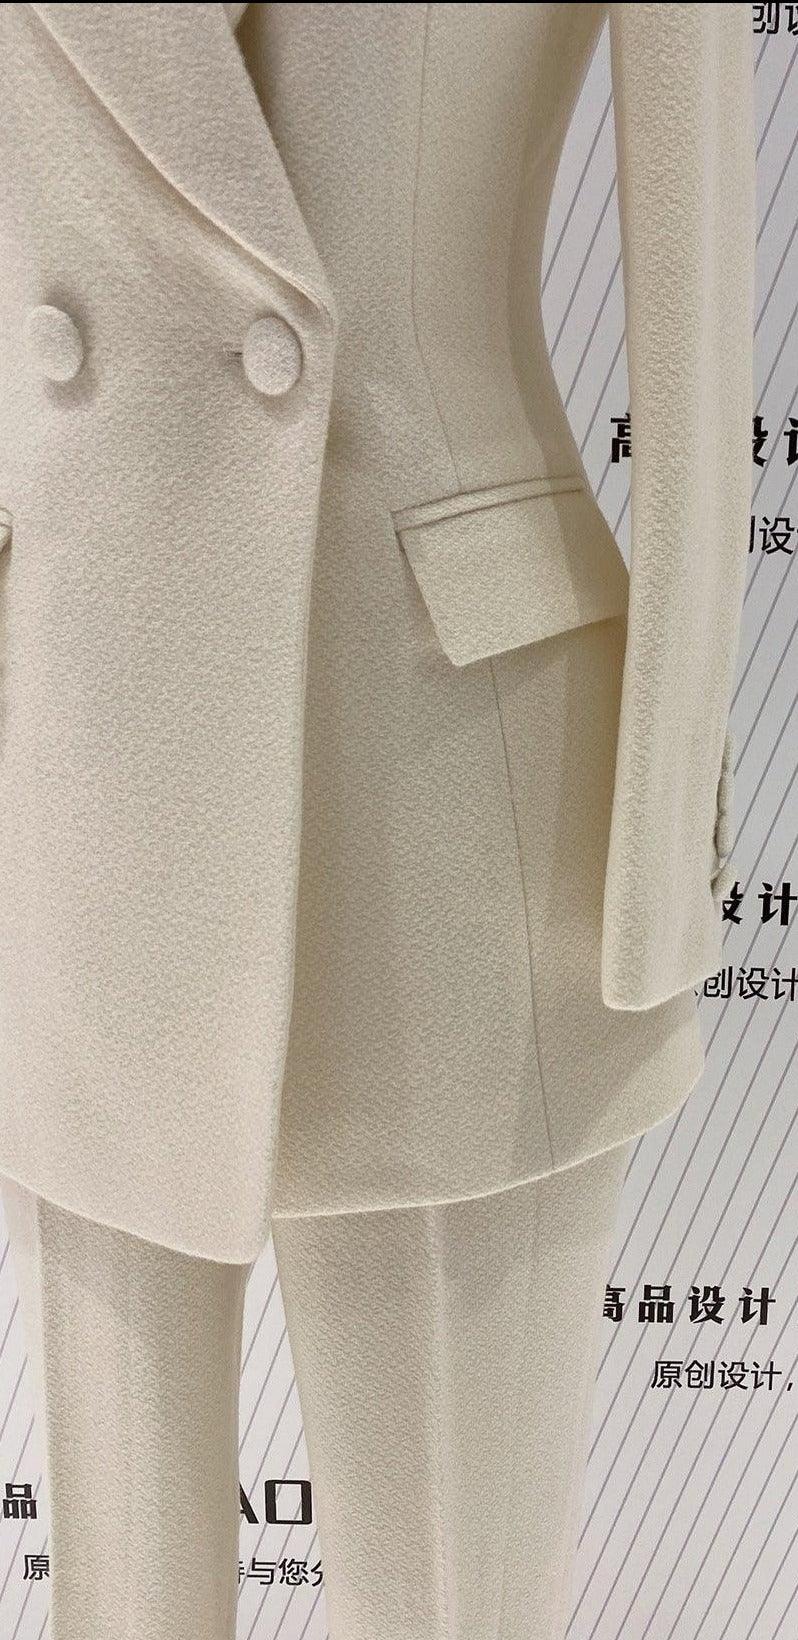 Woolen Women Pant Suit - Thick Beige Trouser Suit - Pantsuit - Guocali